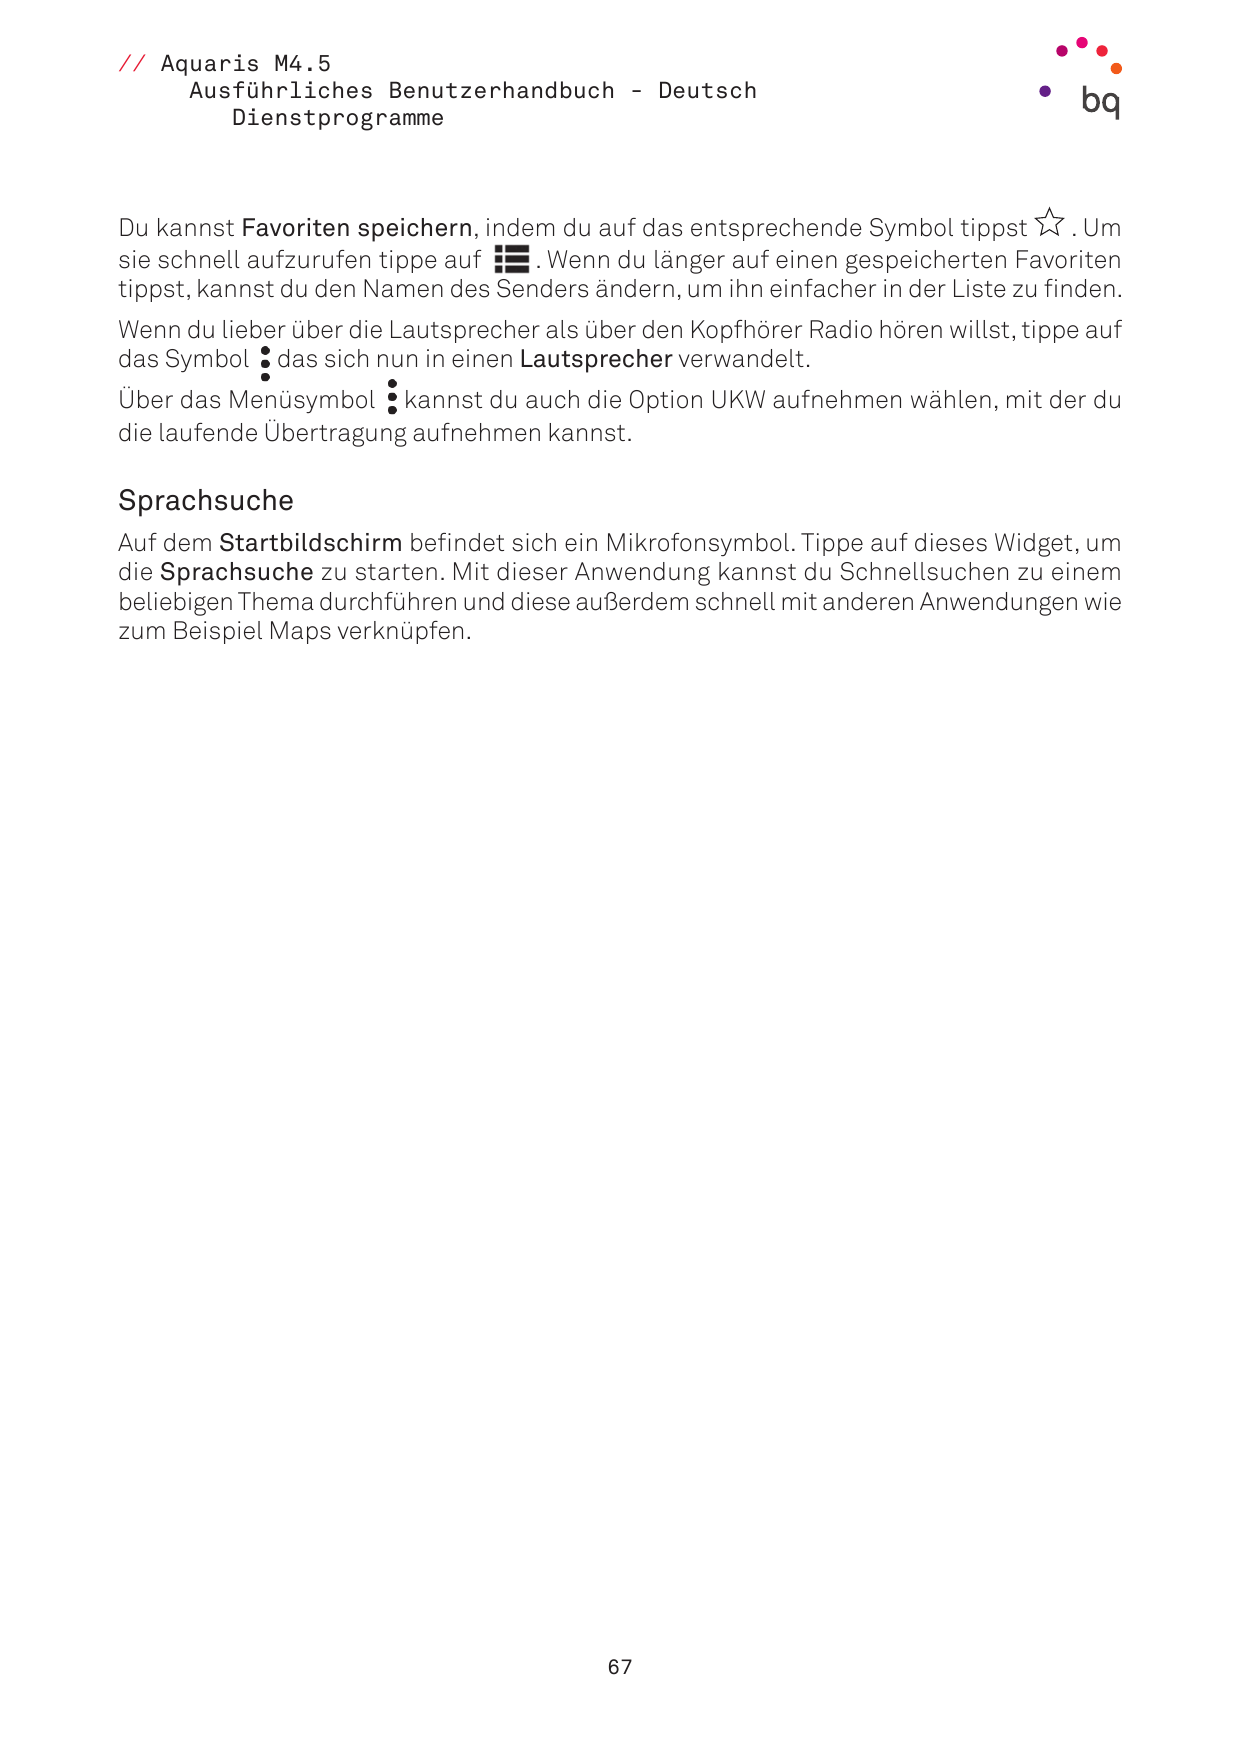 // Aquaris M4.5Ausführliches Benutzerhandbuch - DeutschDienstprogrammeDu kannst Favoriten speichern, indem du auf das entspreche